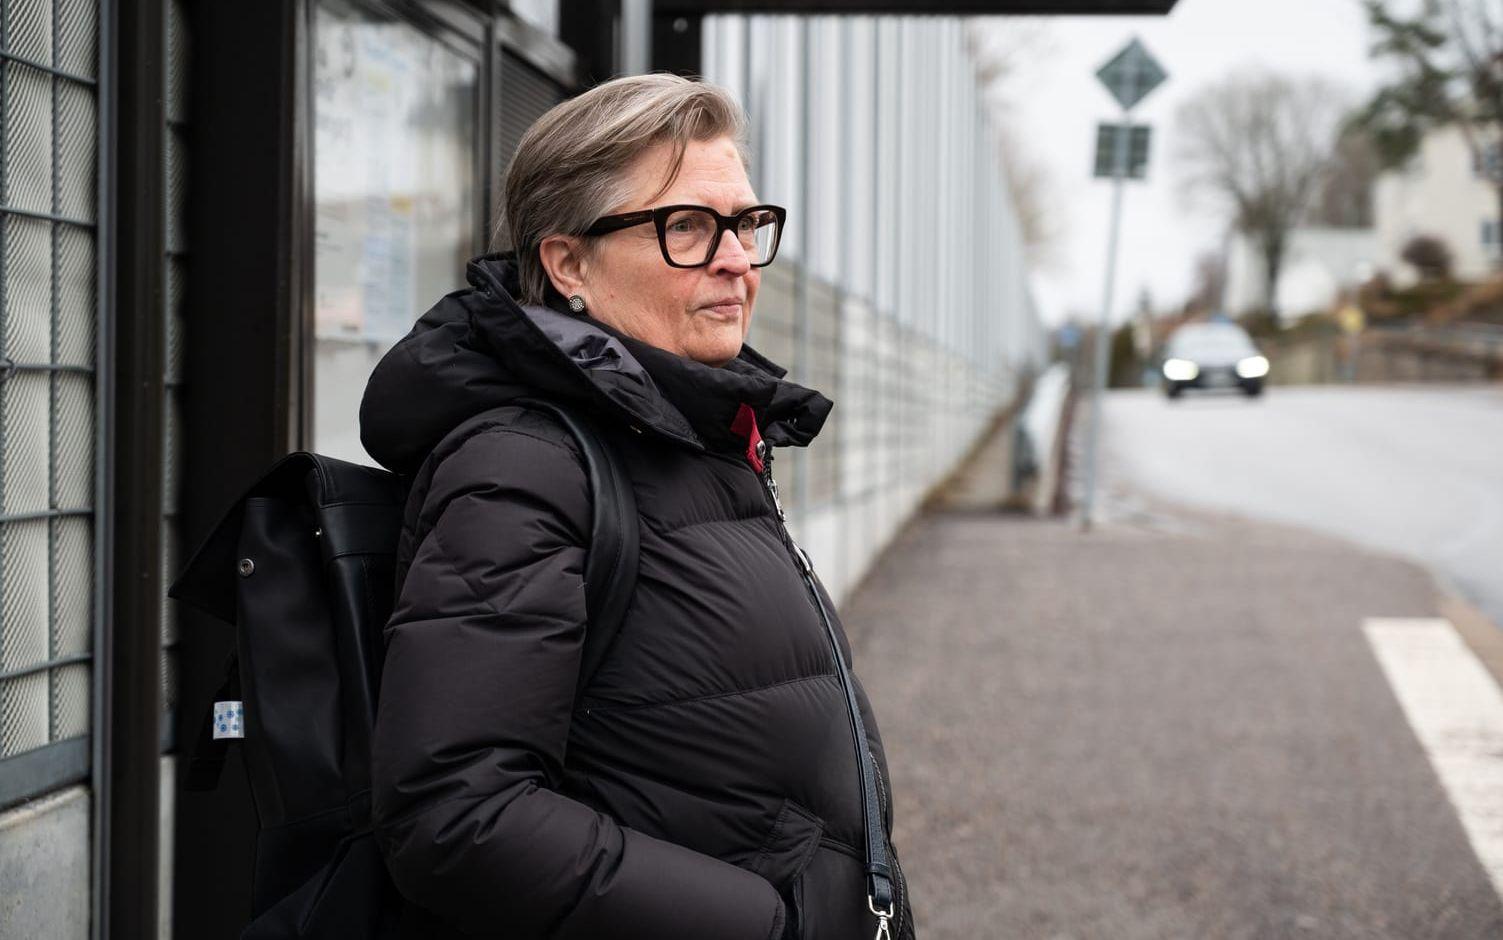 Marie Ottosson pendlar mellan Hulan och centrala Lerum varje dag med Lerumsnabben: ”Det känns som en tillbakagång att de vill lägga ner direktbussar”, säger hon.